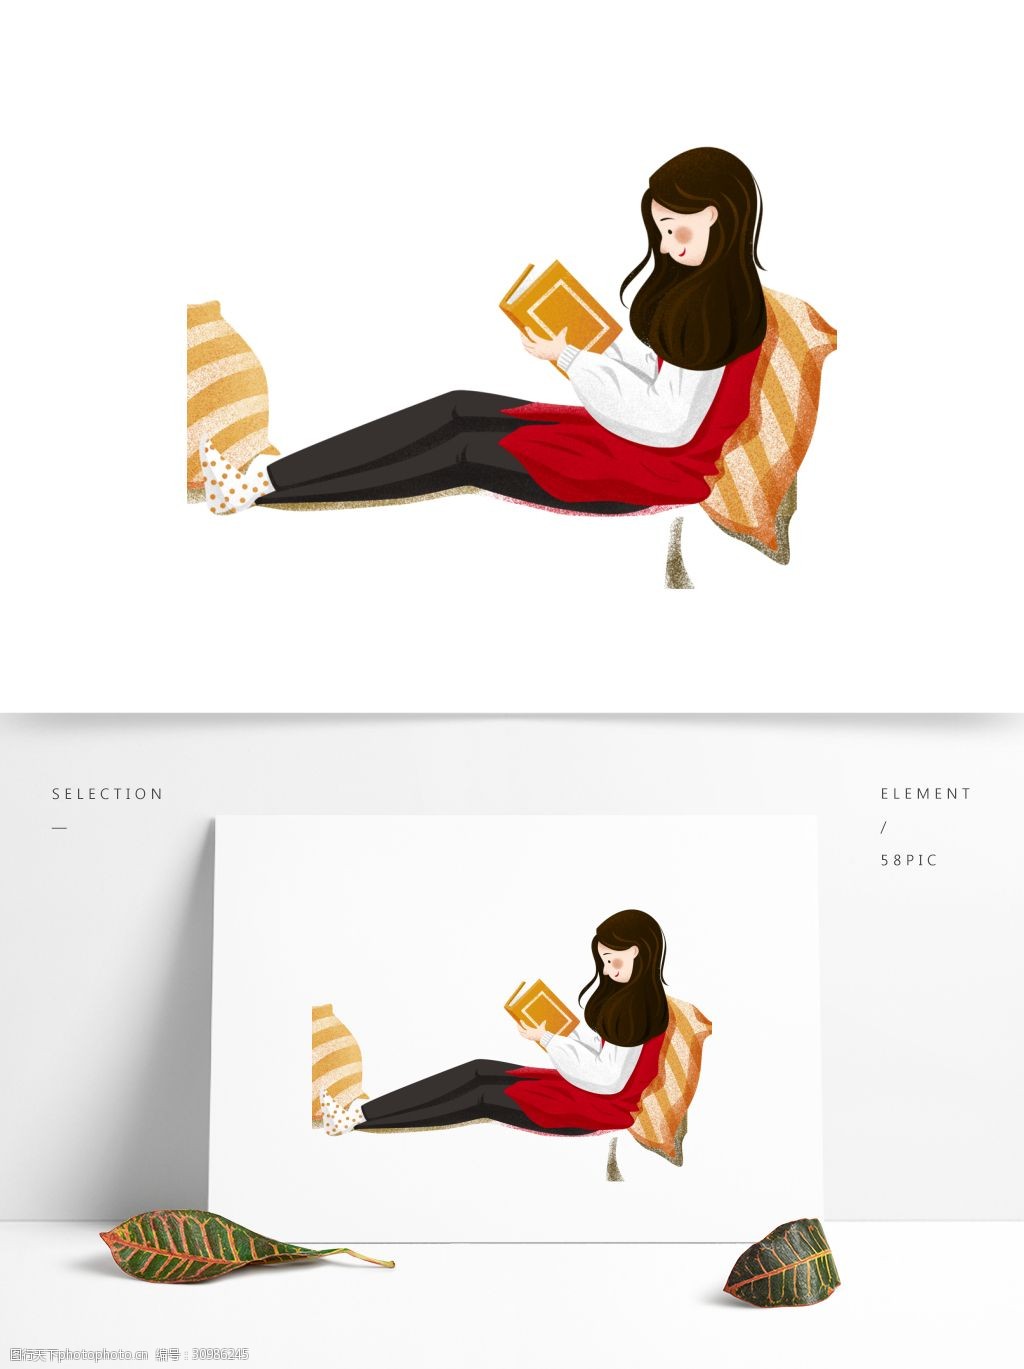 关键词:彩绘安静看书的女孩 彩绘 插画 人物 女孩 书本 看书 安静